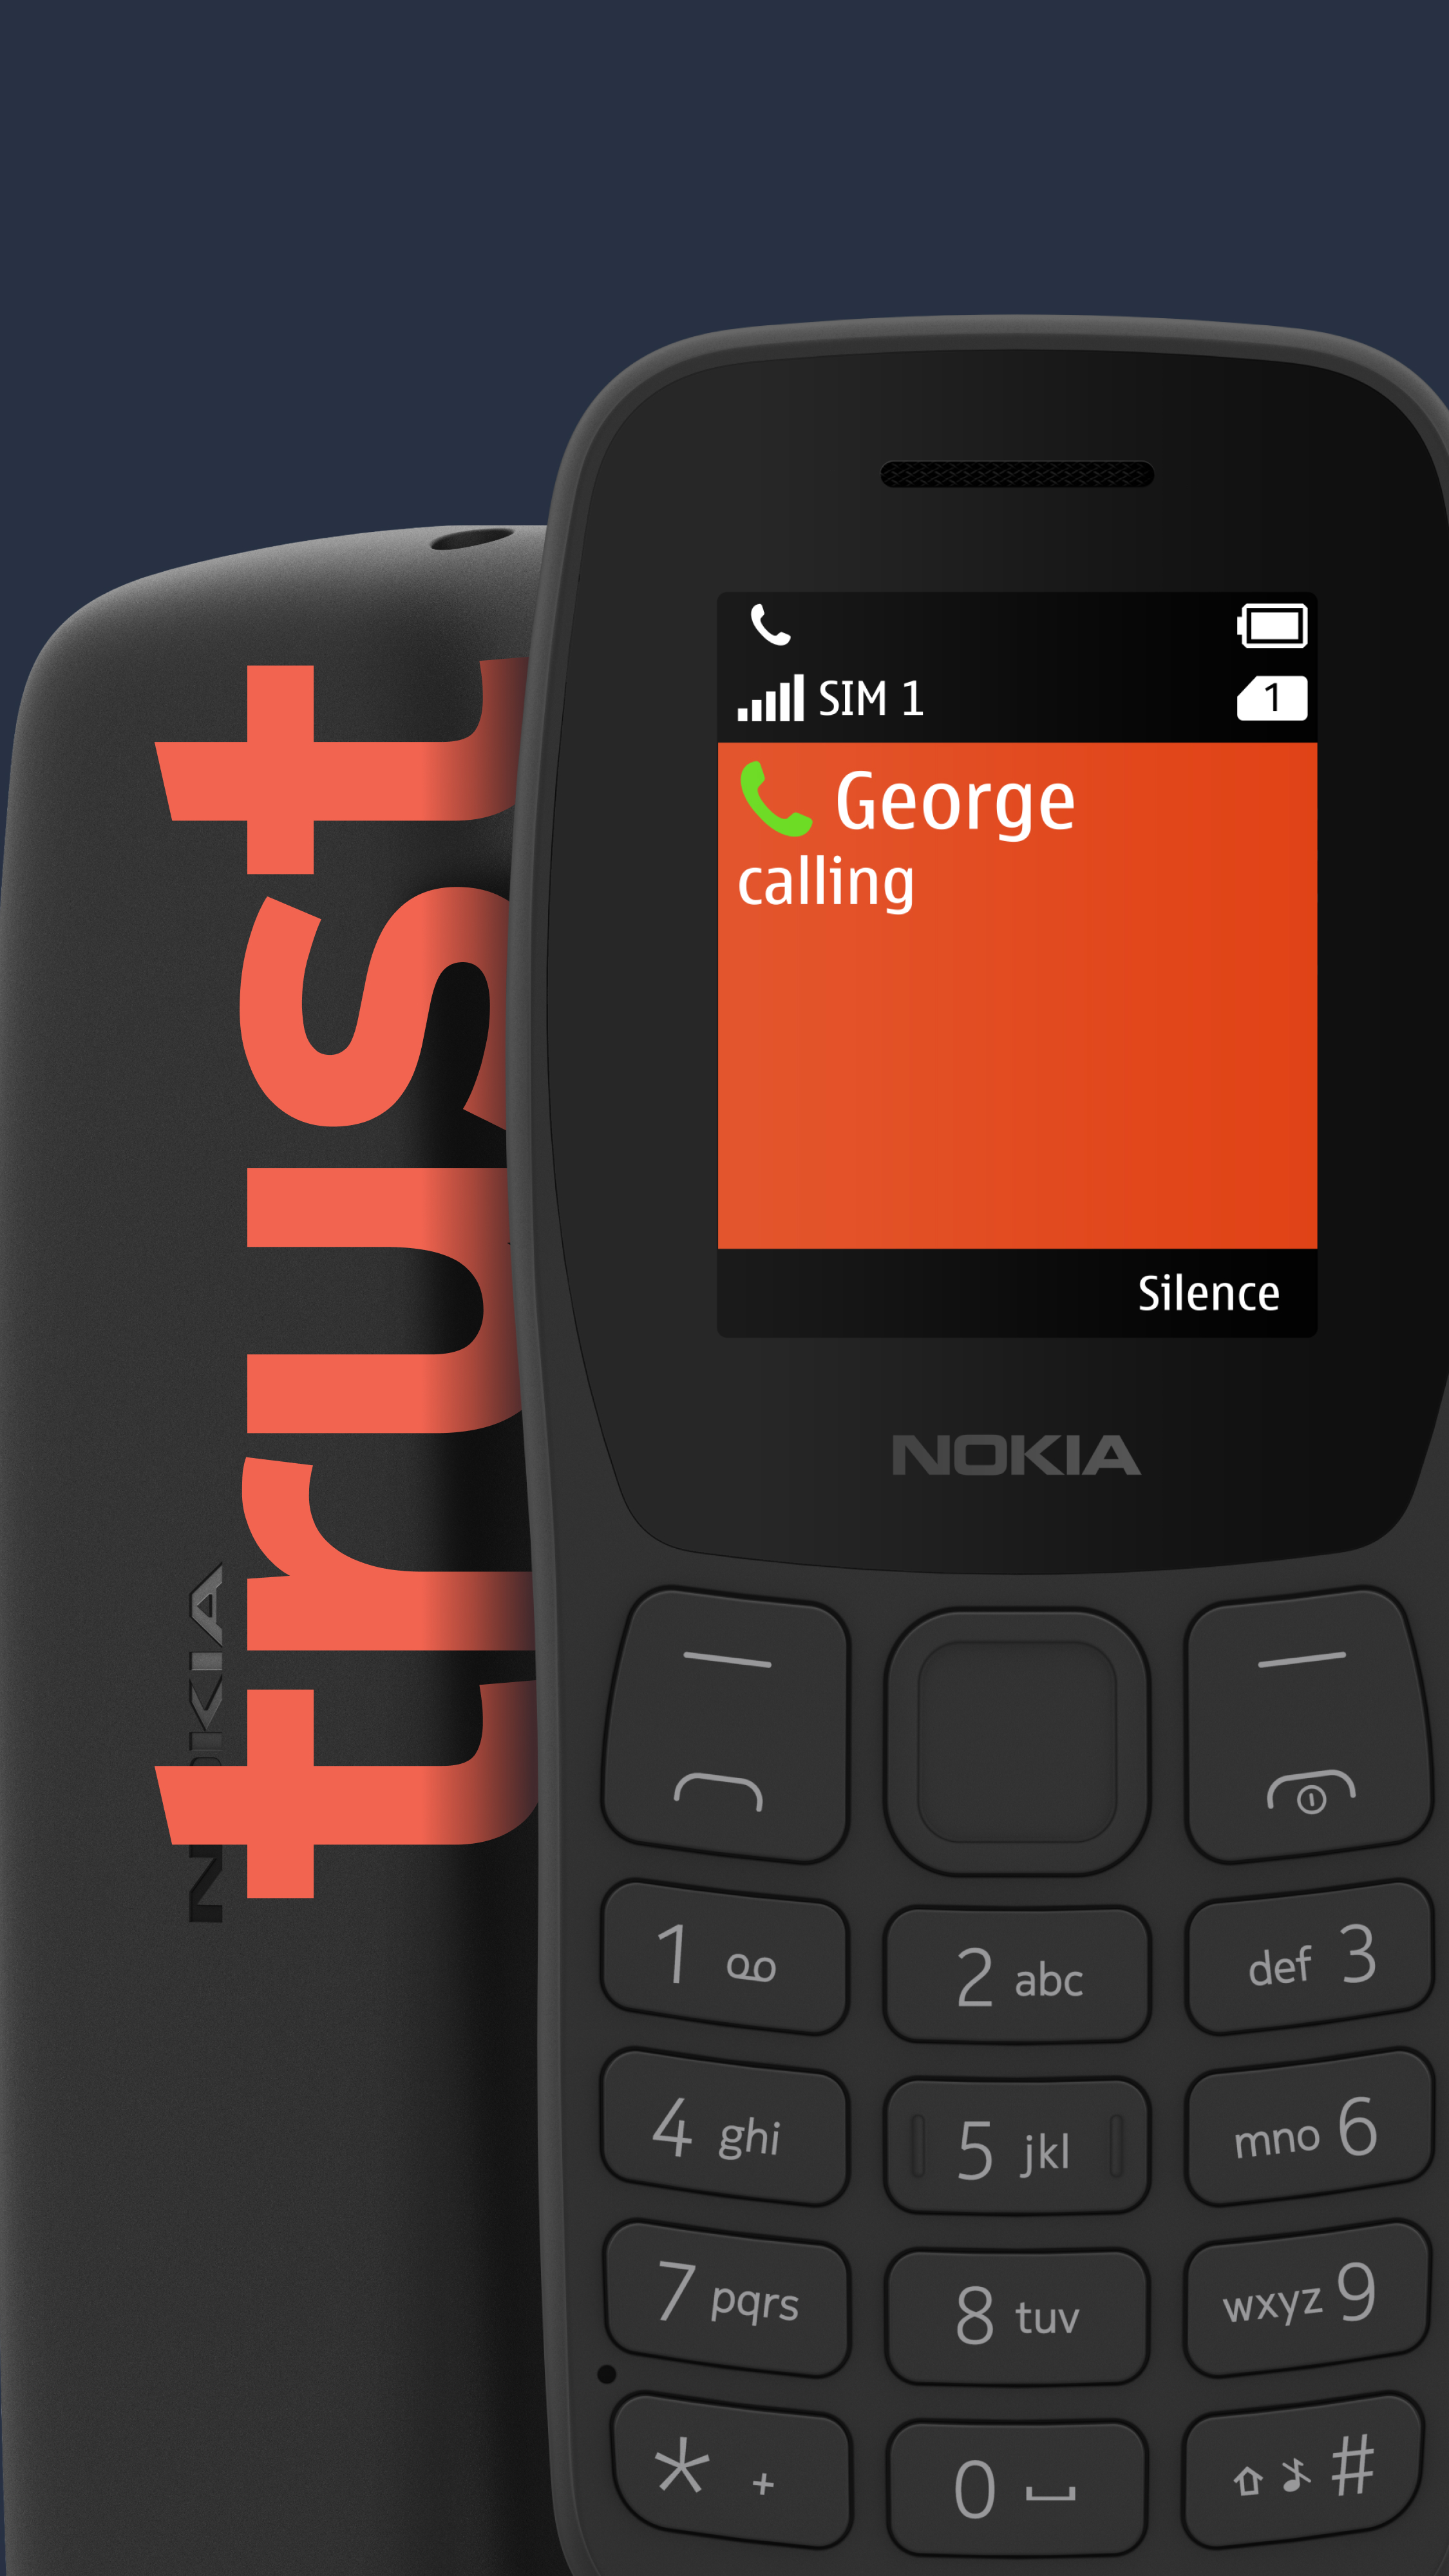 Nokia 105 feature mobile phone - điện thoại feature phone: Với thiết kế gọn nhẹ, chất lượng âm thanh tuyệt vời và những tính năng cơ bản đầy đủ, Nokia 105 feature mobile phone là lựa chọn hoàn hảo cho những người yêu thích sự đơn giản và tiện lợi.